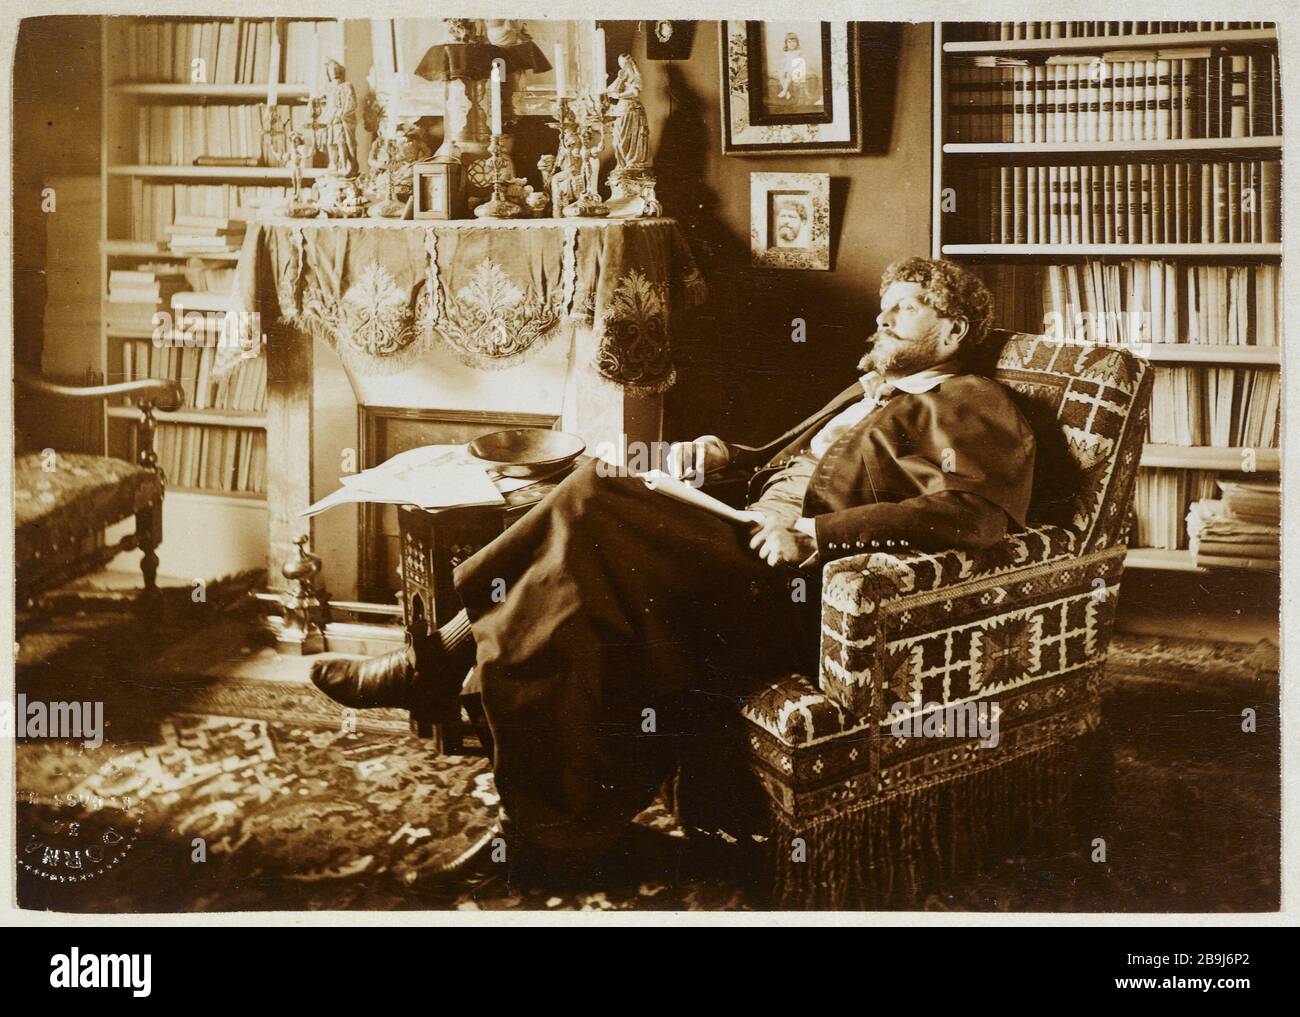 PORTRÄT DES JOHANNES IM ROLLSTUHL RICHEPIN JULES DORNAC. "Portrait de Jean Richepin dans son fauteuil, vers 1890". Paris, musée Carnavalet. Stockfoto